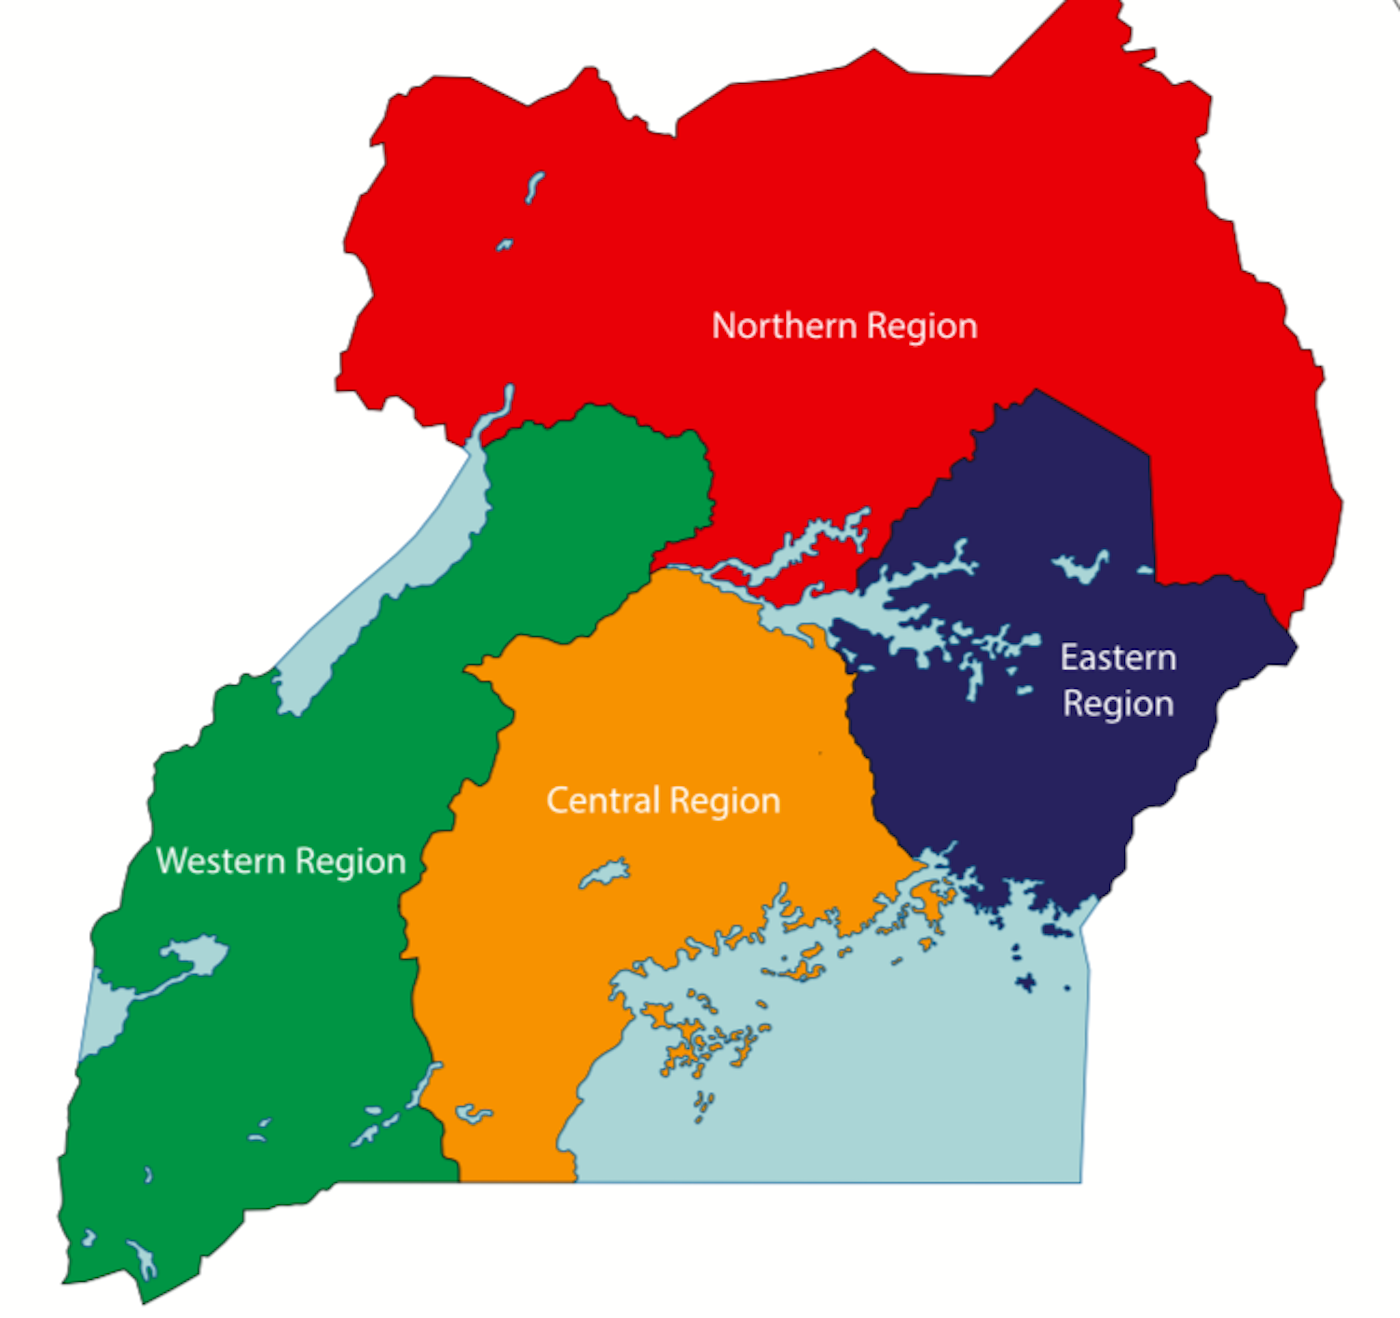 Uganda Map In Africa